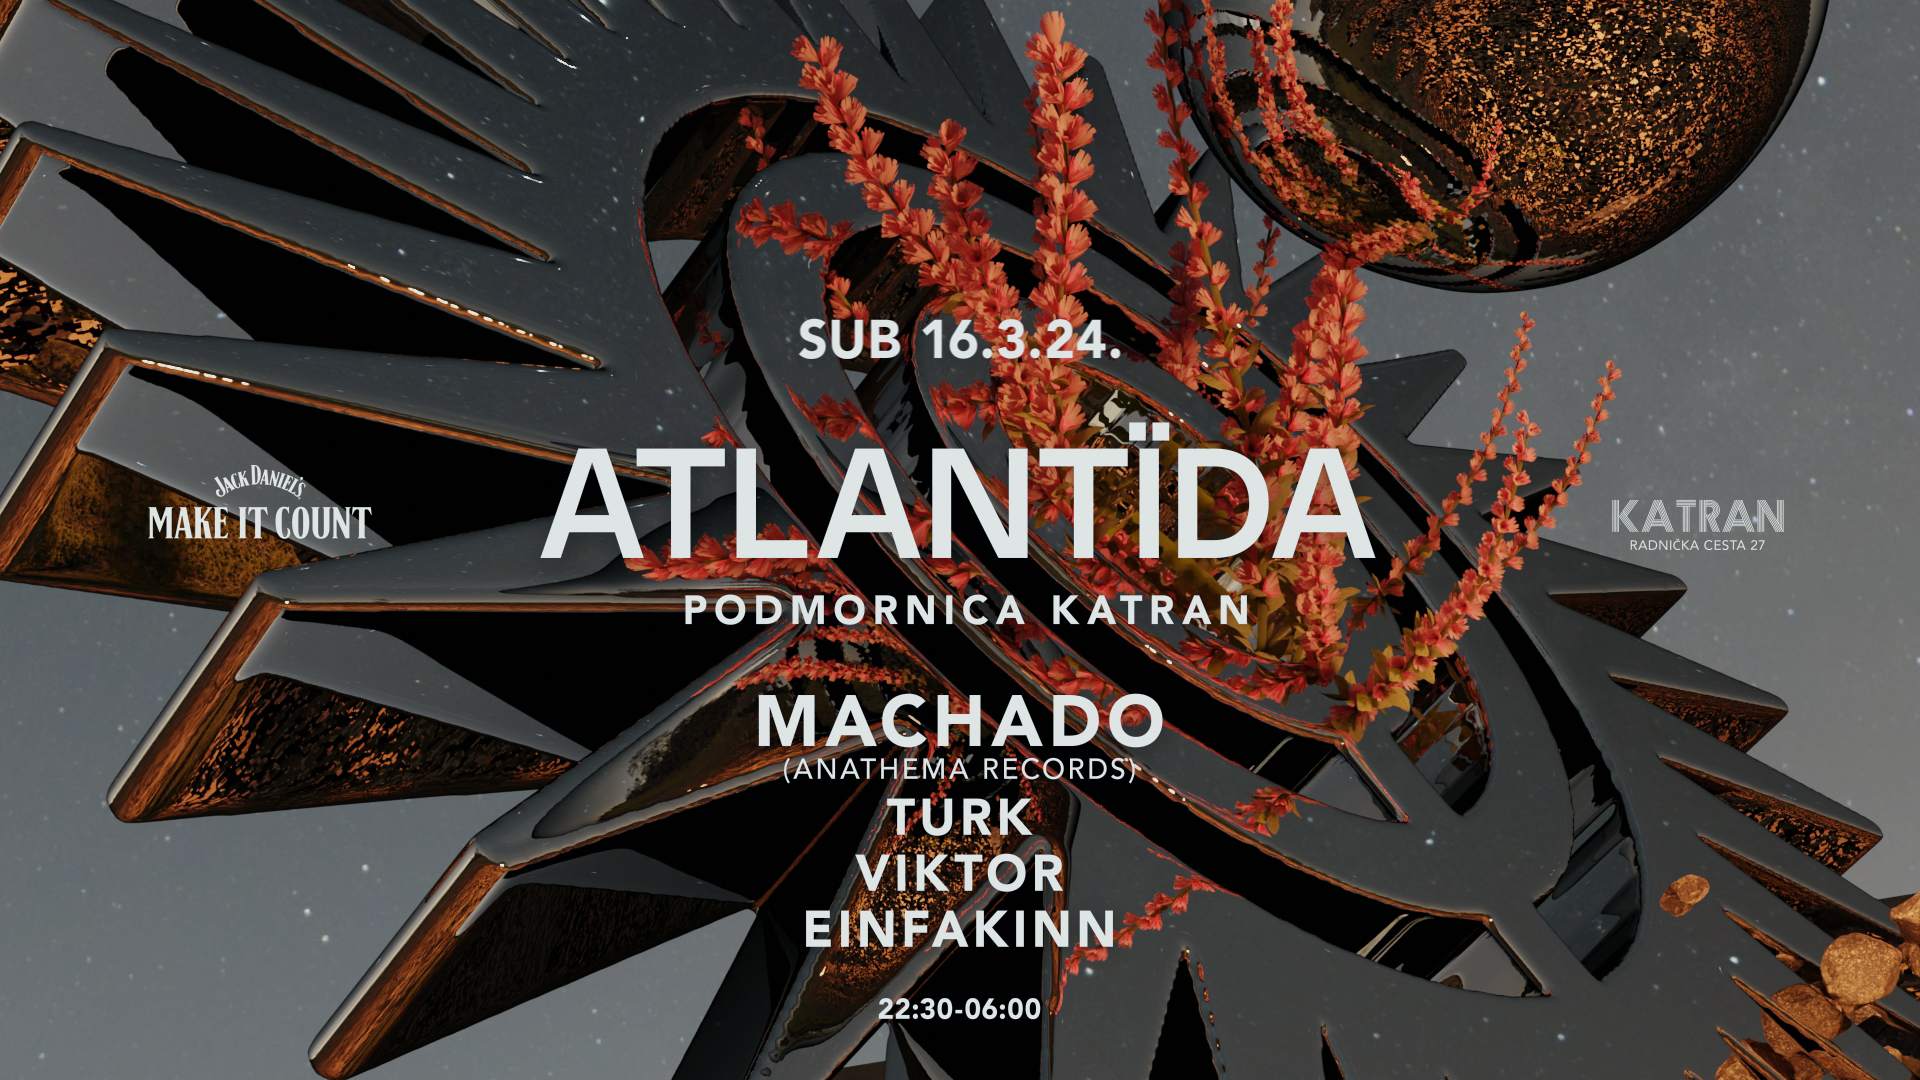 ATLANTIDA with Machado - Podmornica Katran - フライヤー表